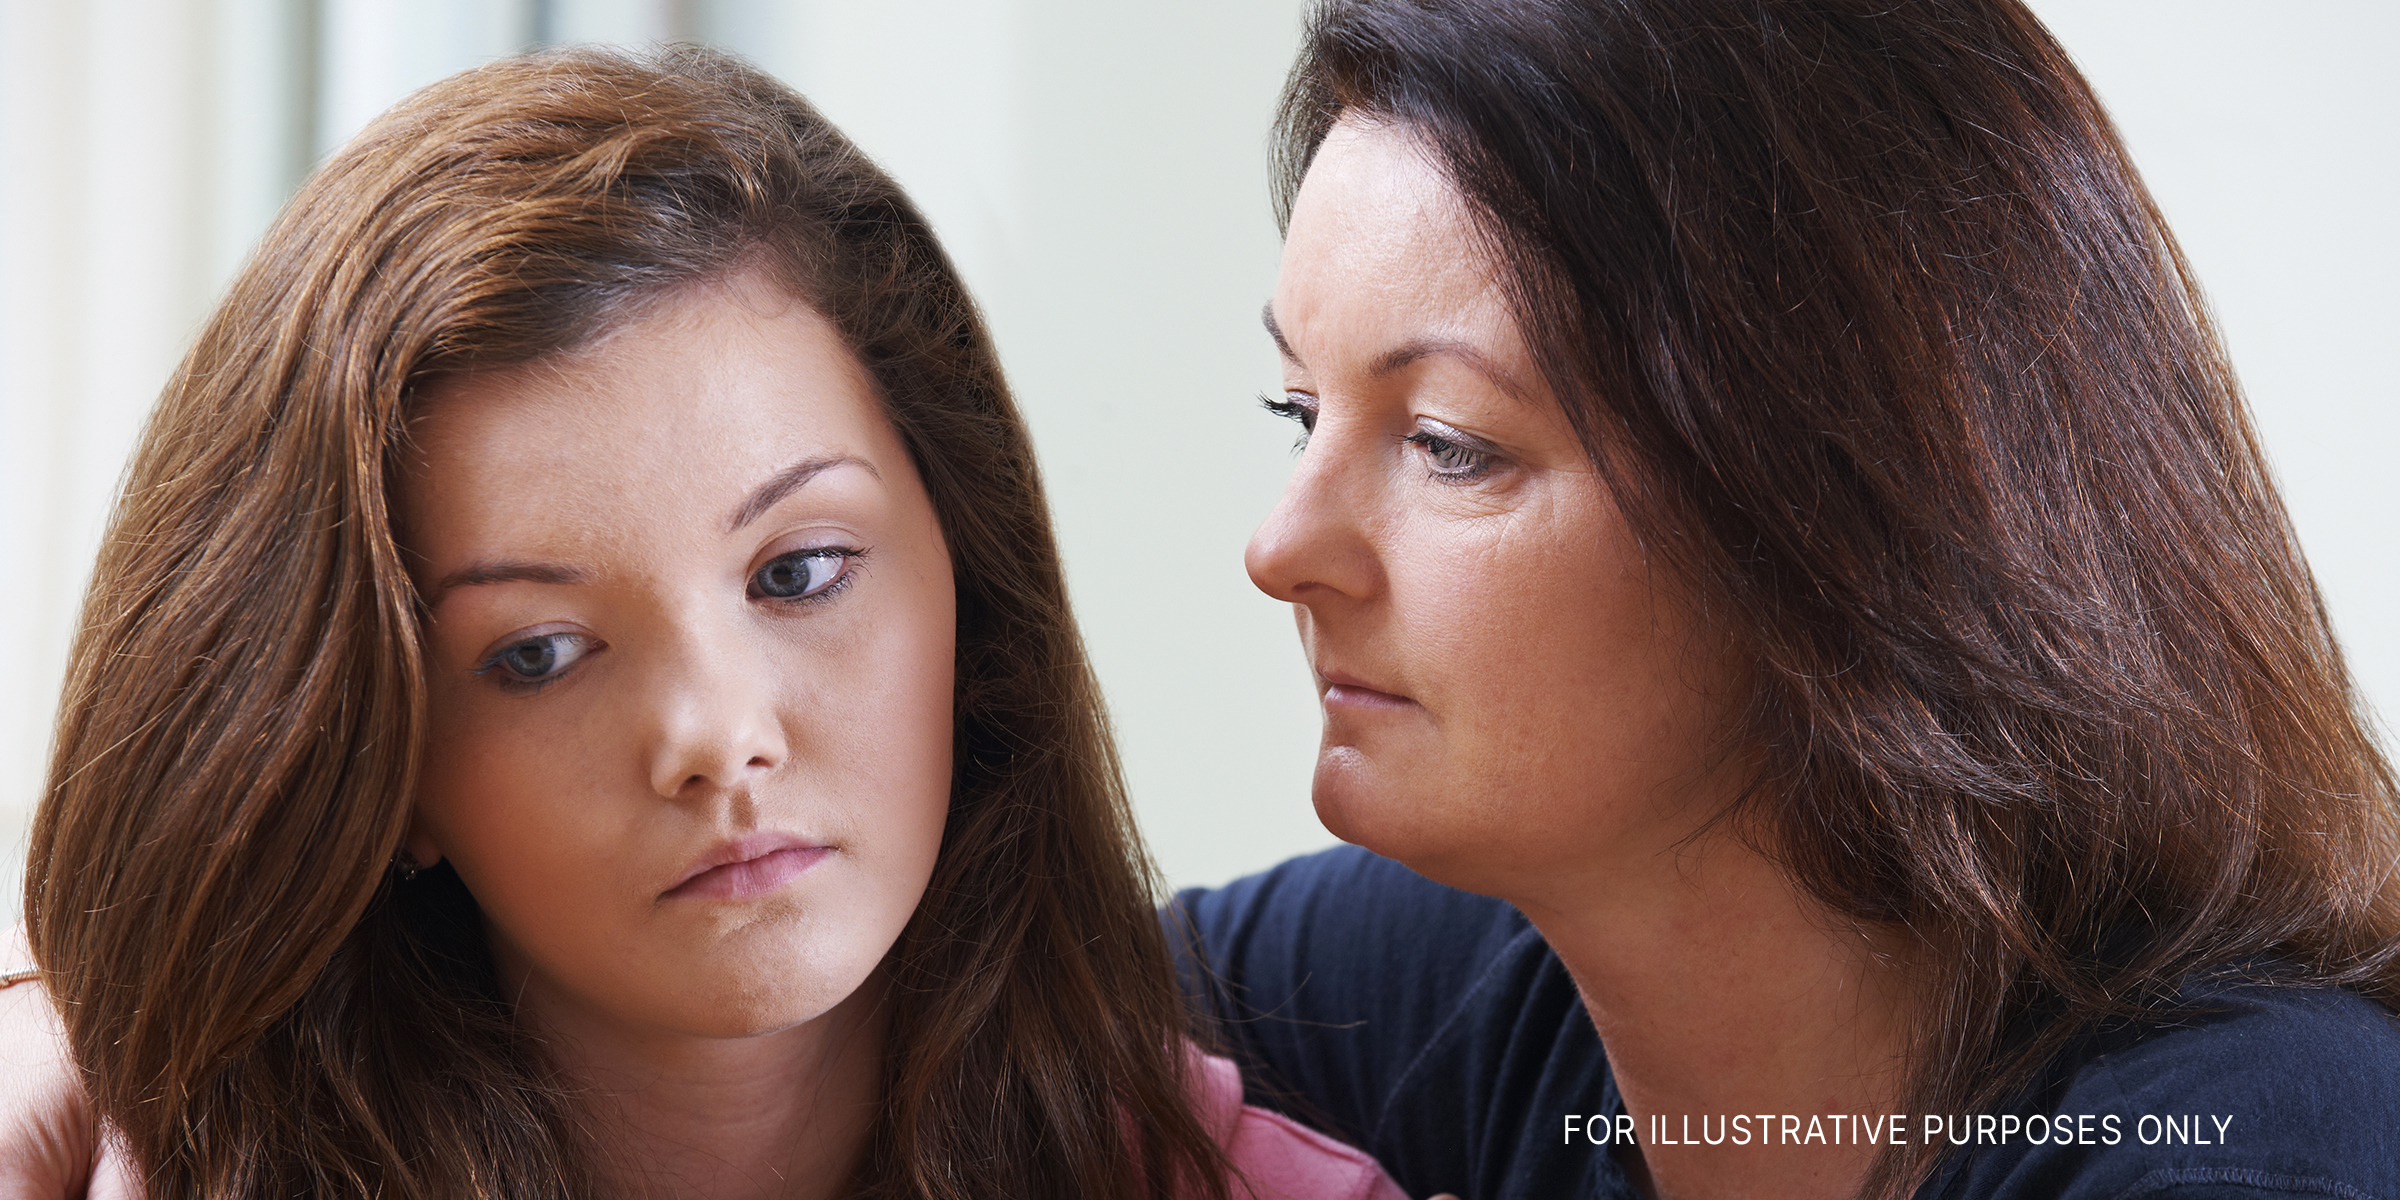 Mother comforting teenage daughter | Source: Shutterstock